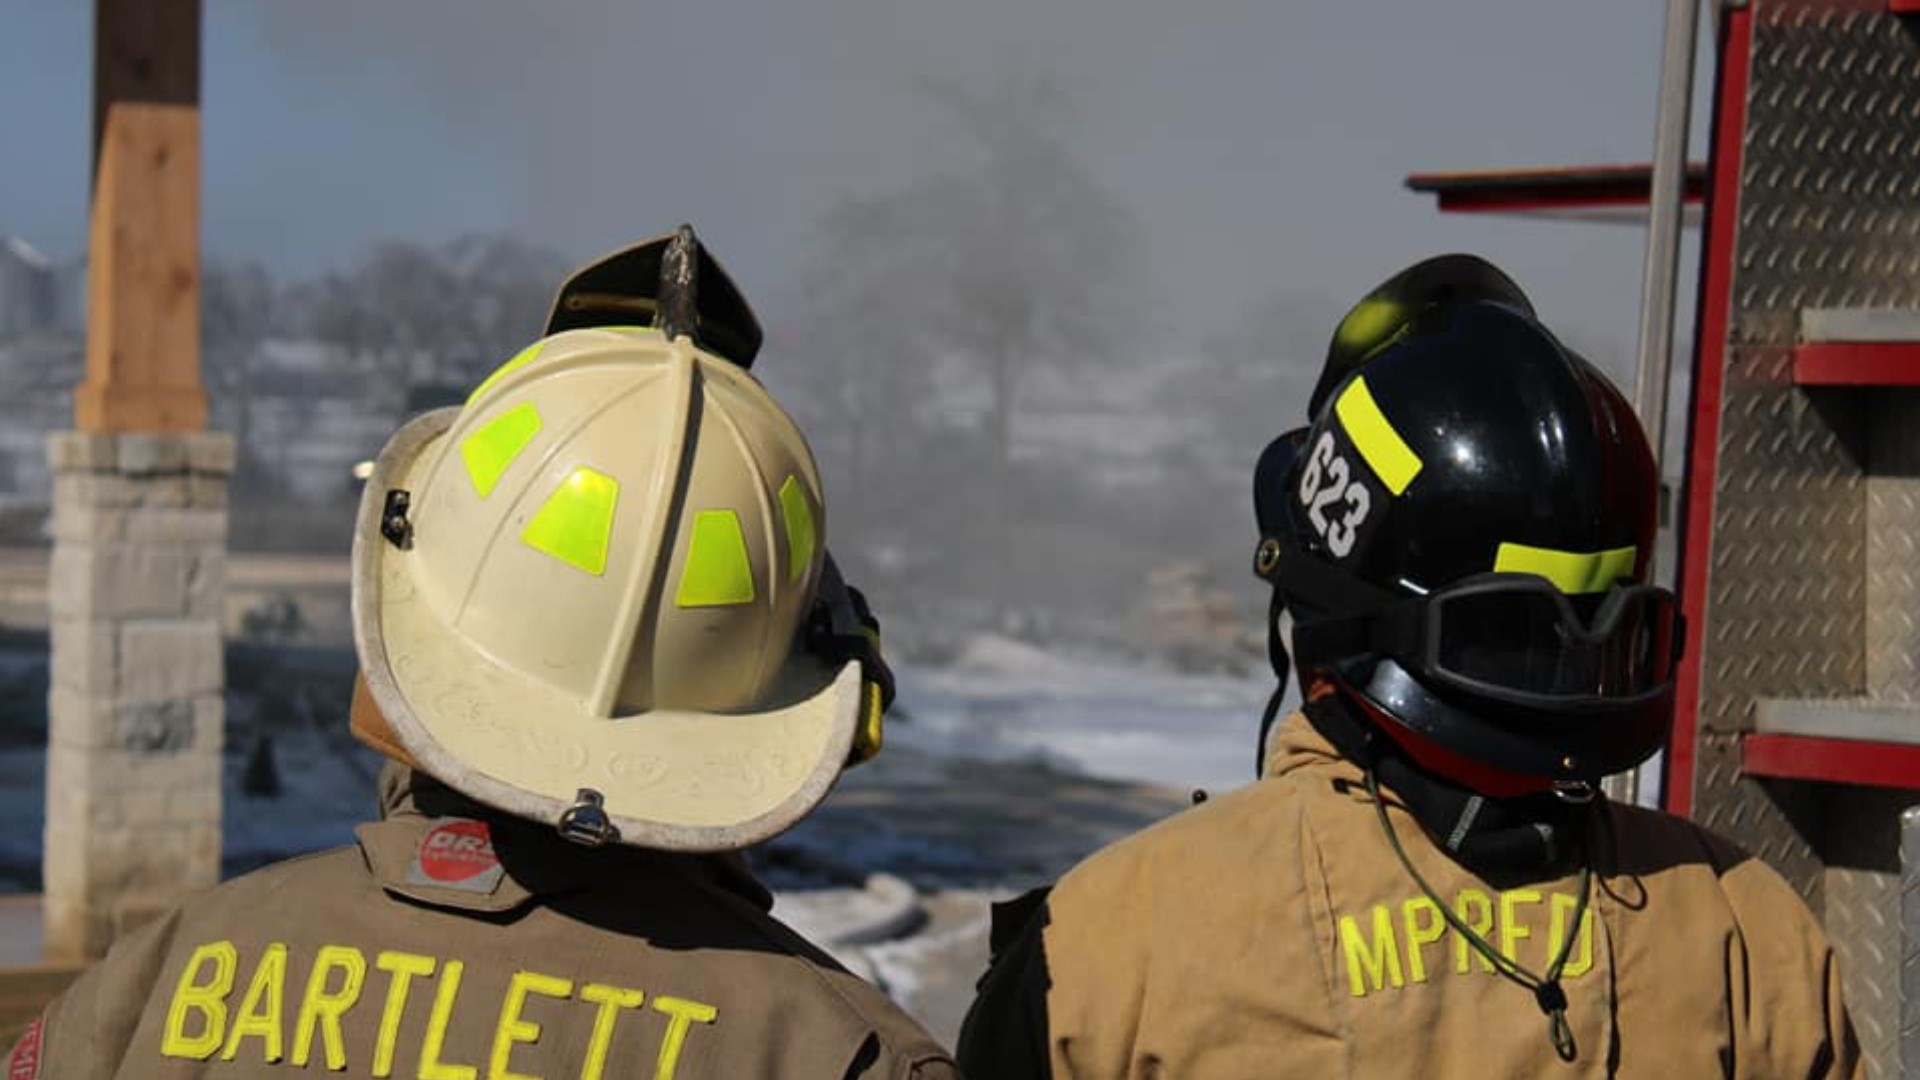 Volunteer Fire Departments respond to 652 winter storm calls